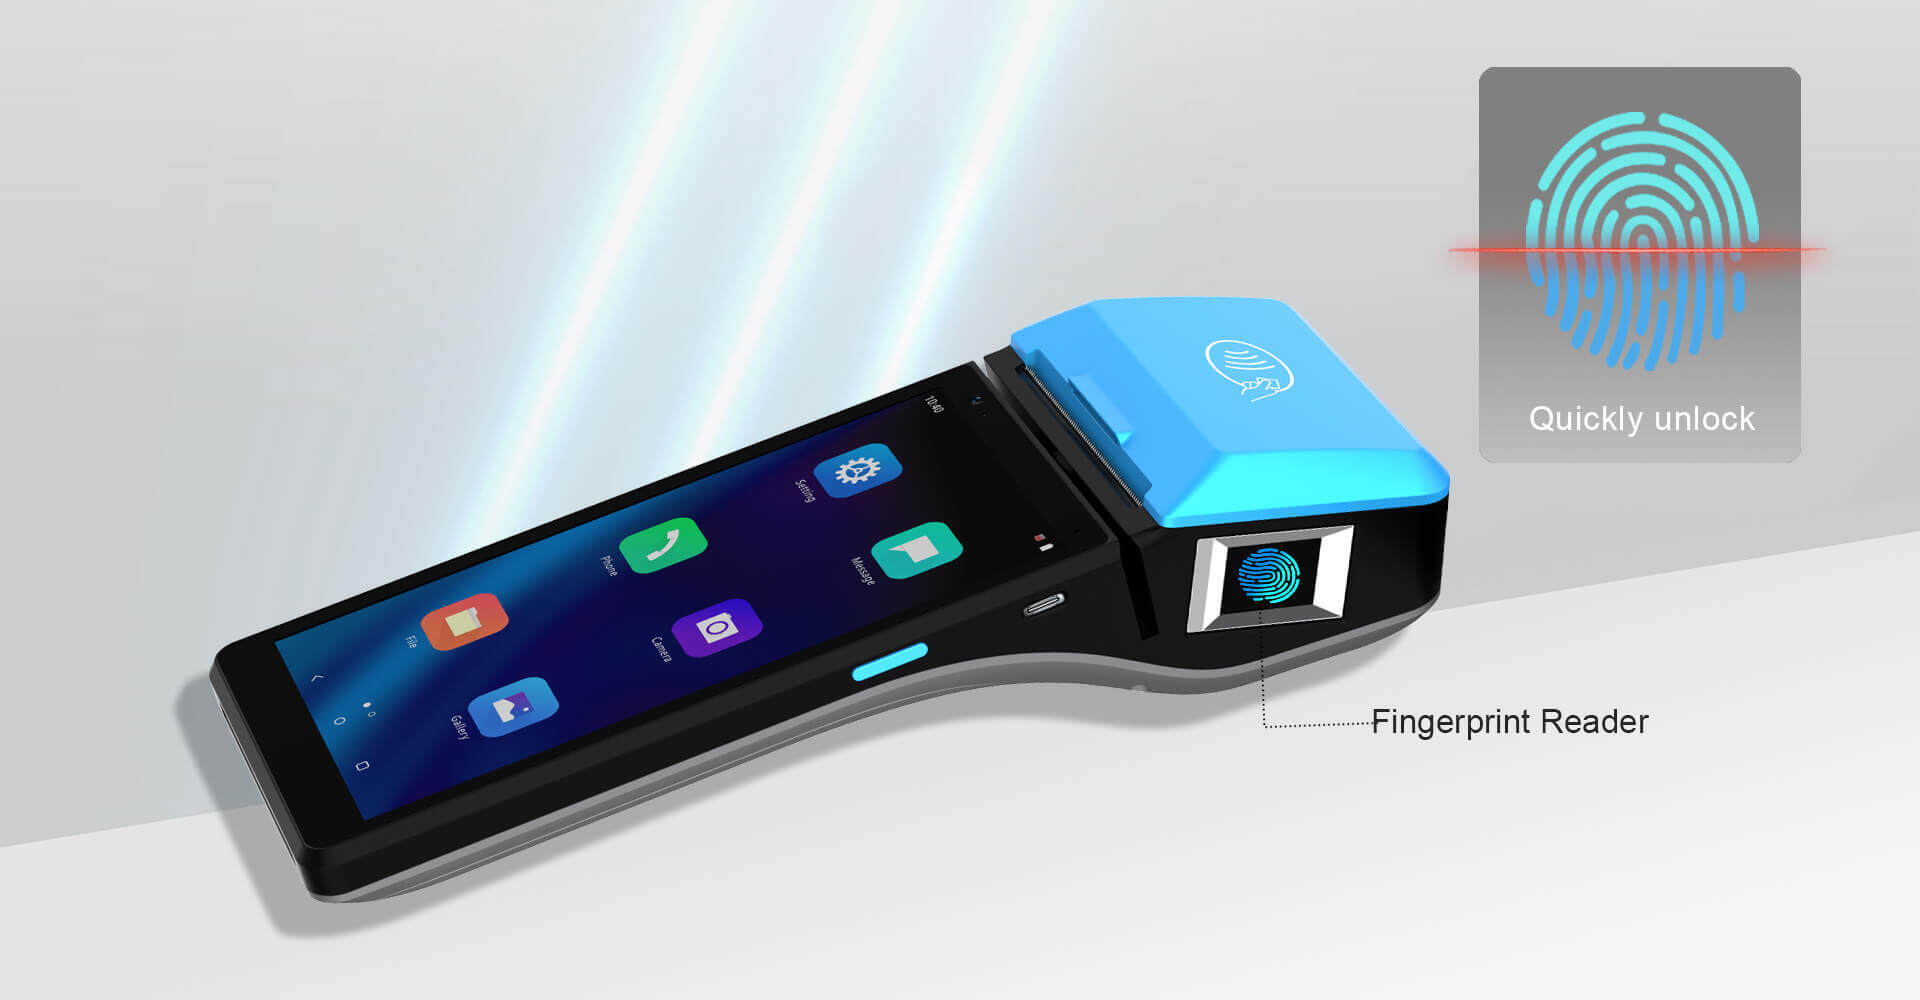 Smart POS with fingerprint reader